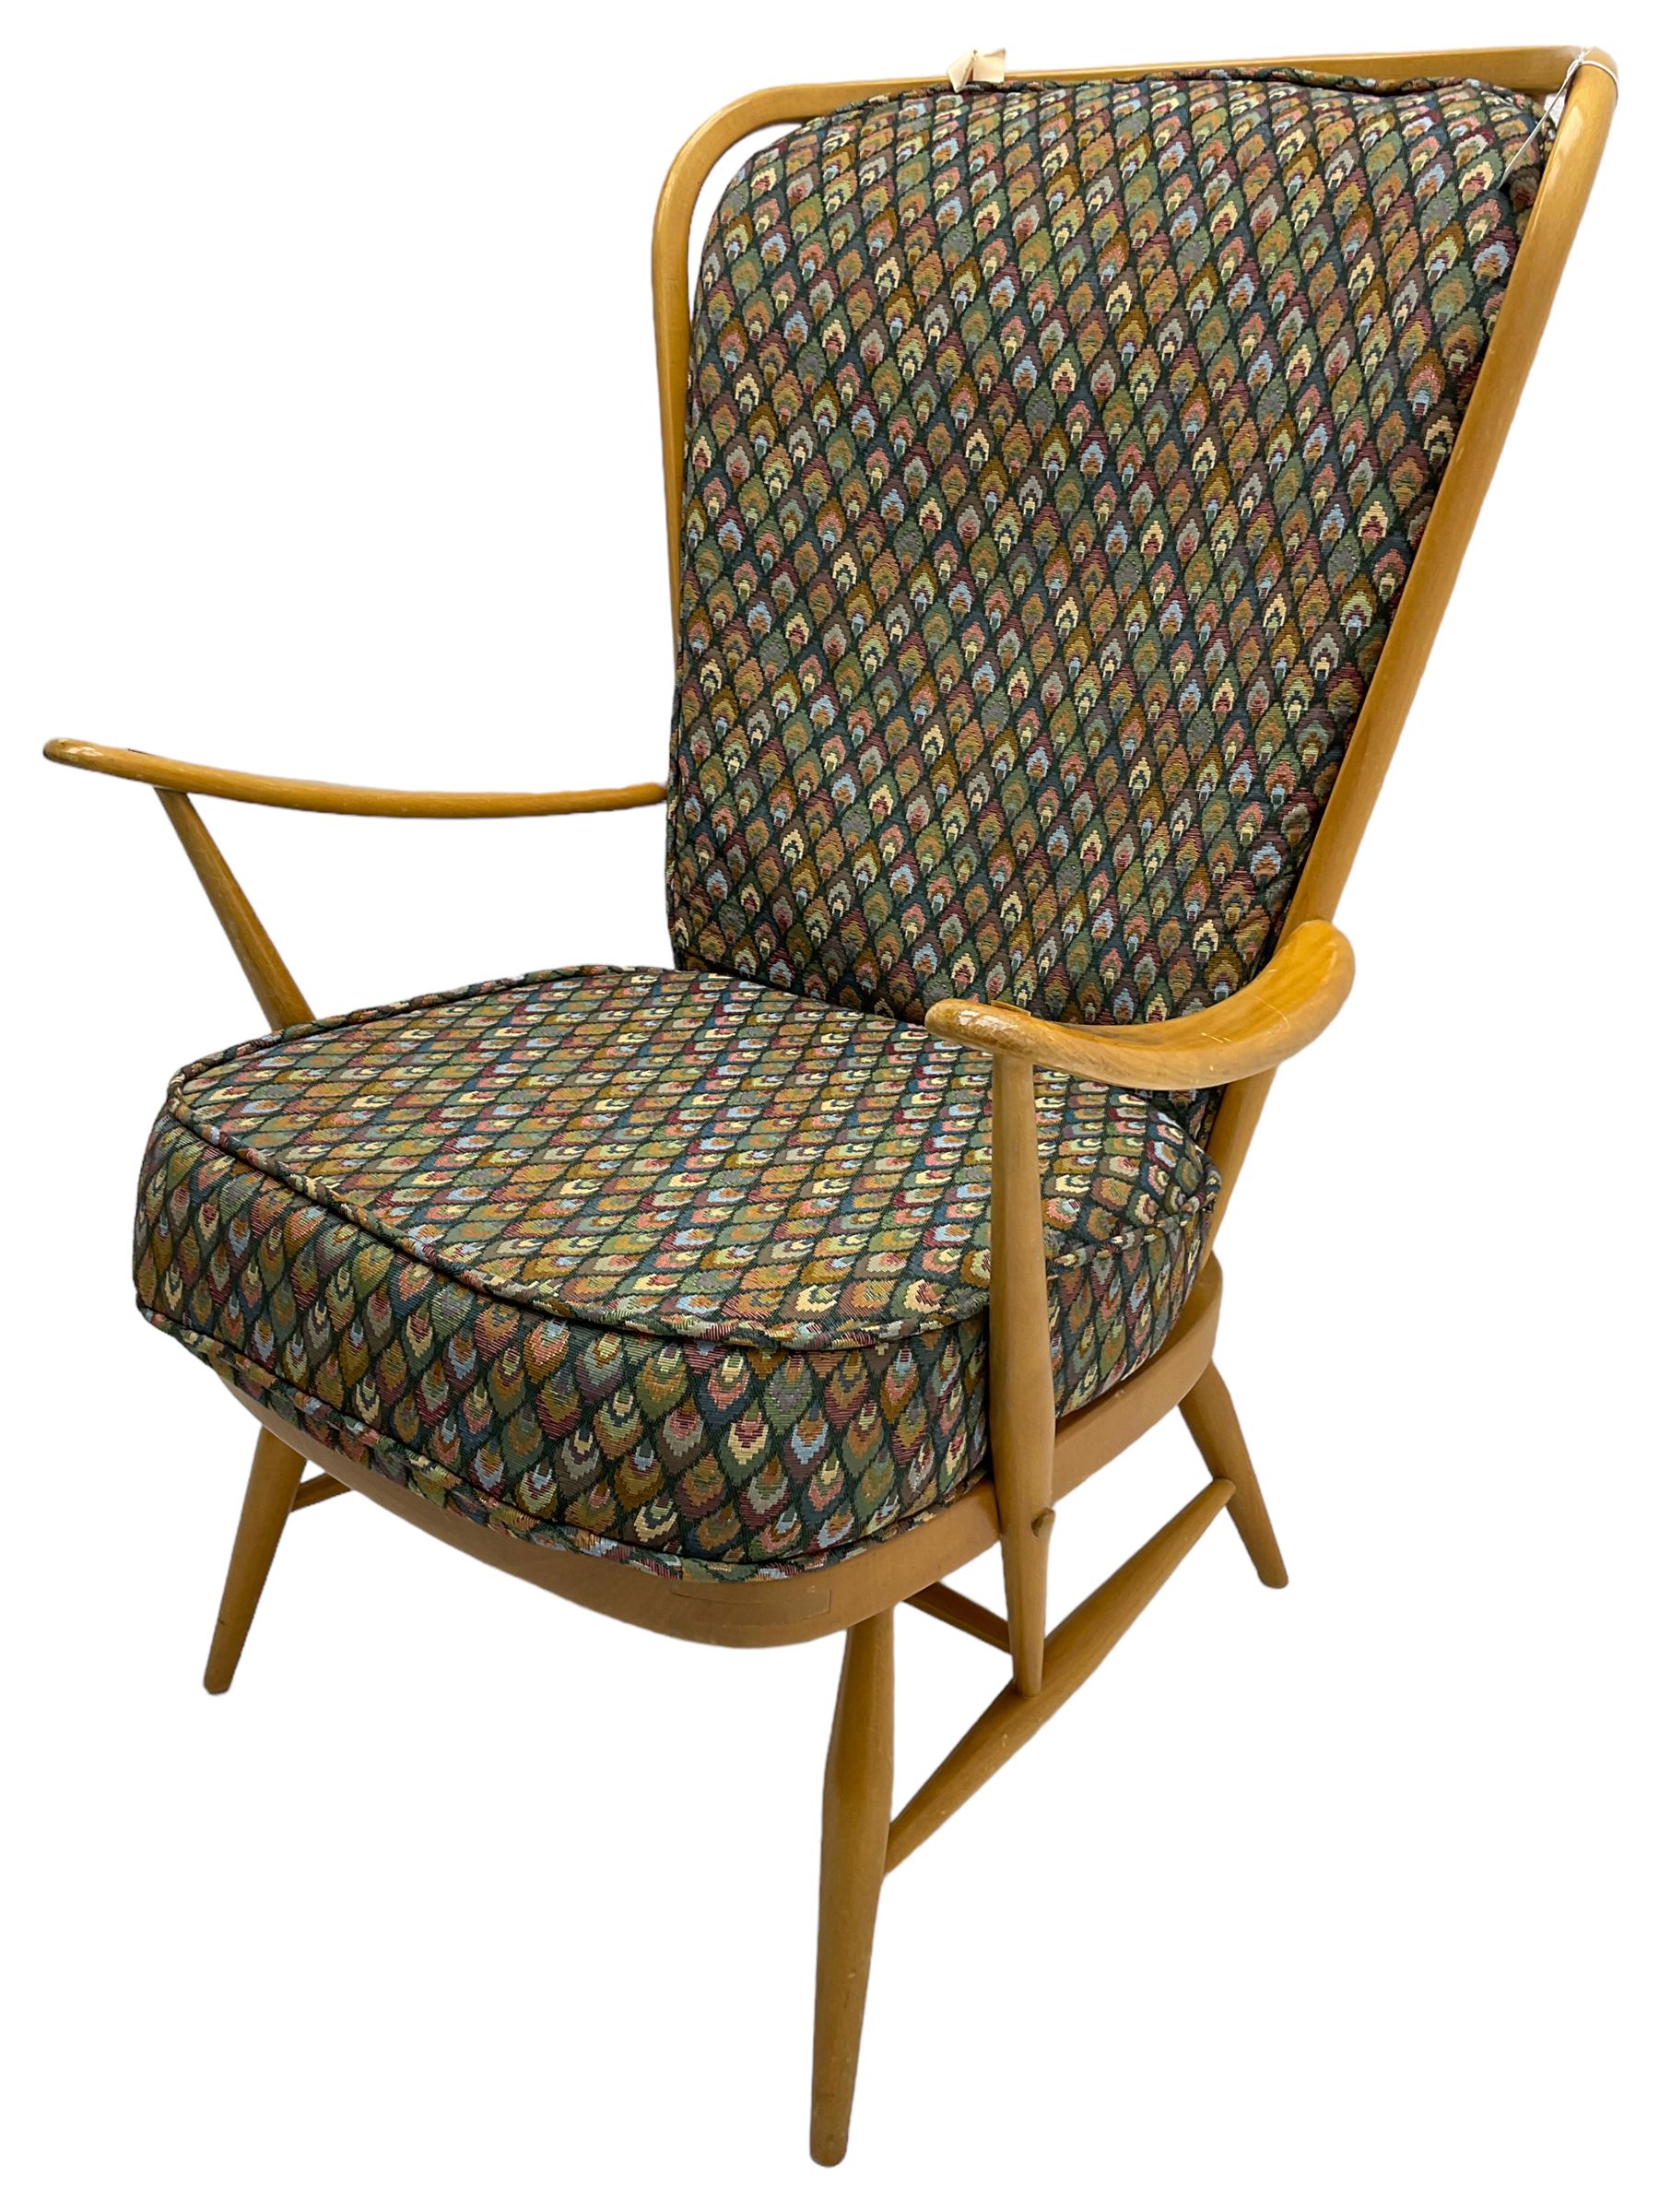 Ercol - light beech framed high-back 'Windsor' easy chair - Image 4 of 7